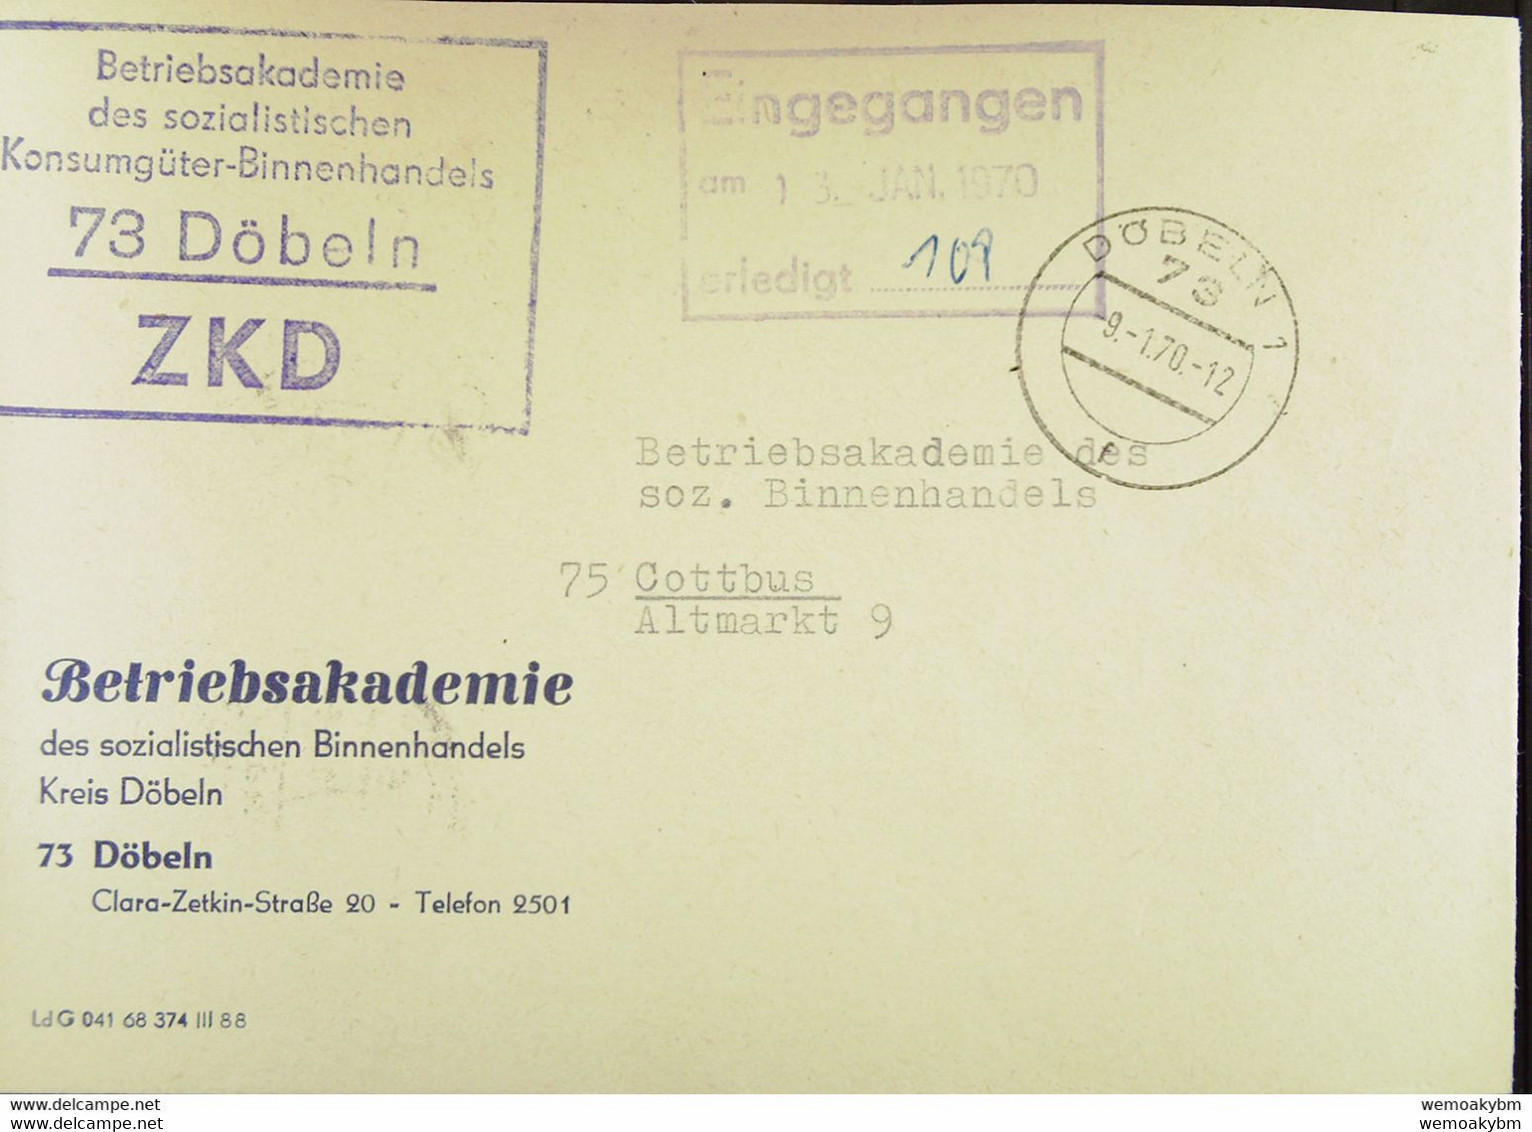 Fern-Brief Mit ZKD-Kastenstempel "Betriebsakademie Des Soz. Konsumgüter-Binnenhandels 73 Döbeln" 9.1.70 Nach Cottbus - Central Mail Service